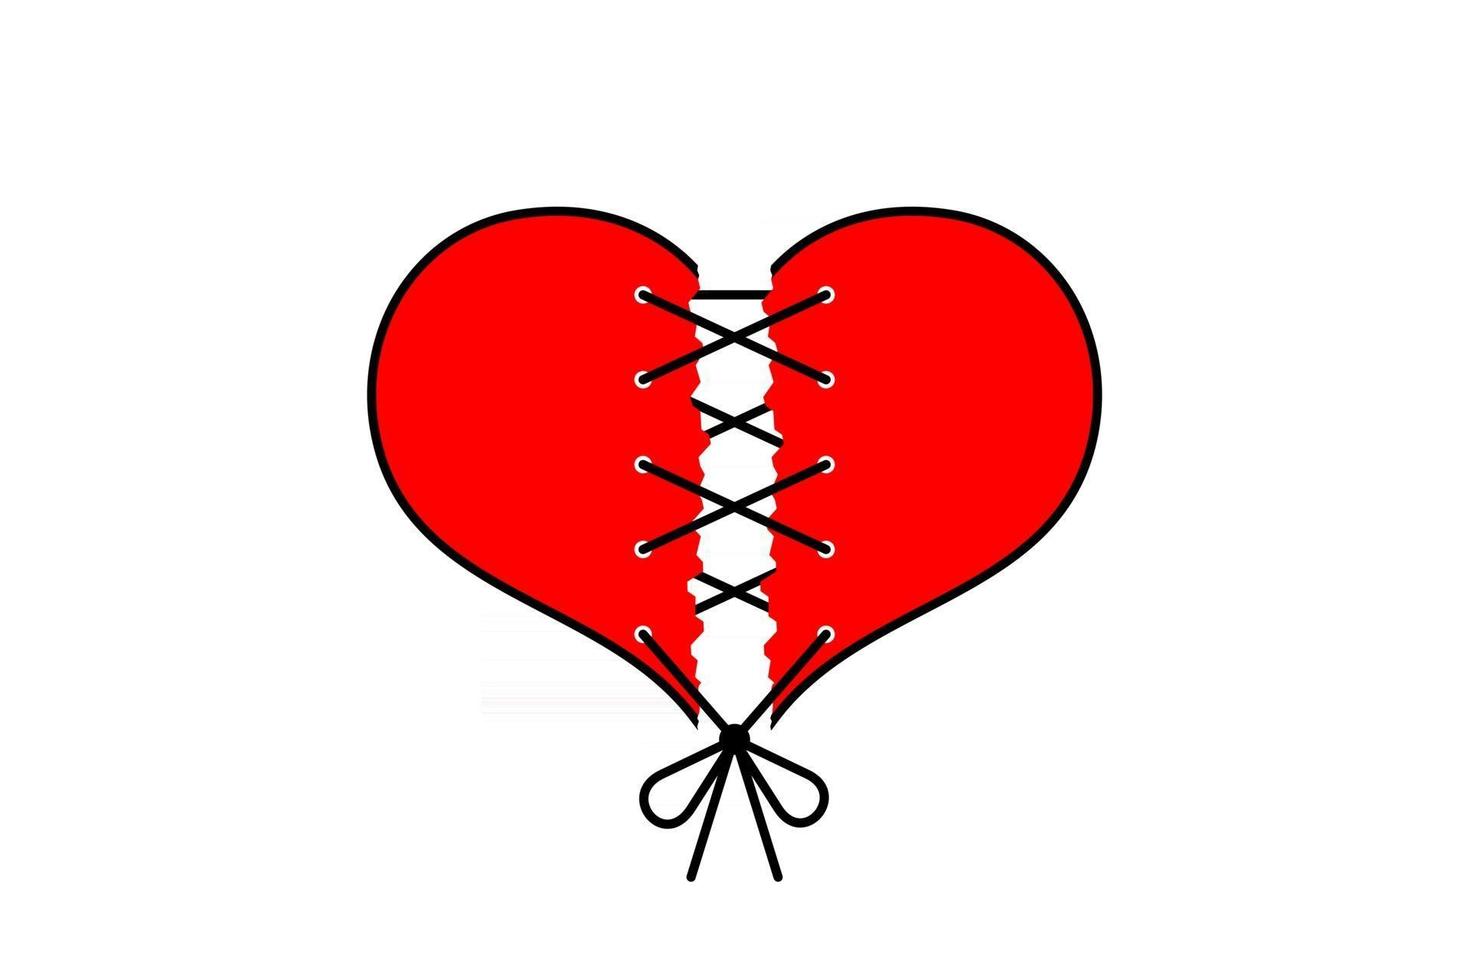 cuore rosso strappato come amore spezzato cucito con filo nero su sfondo bianco. carta vettoriale per San Valentino.